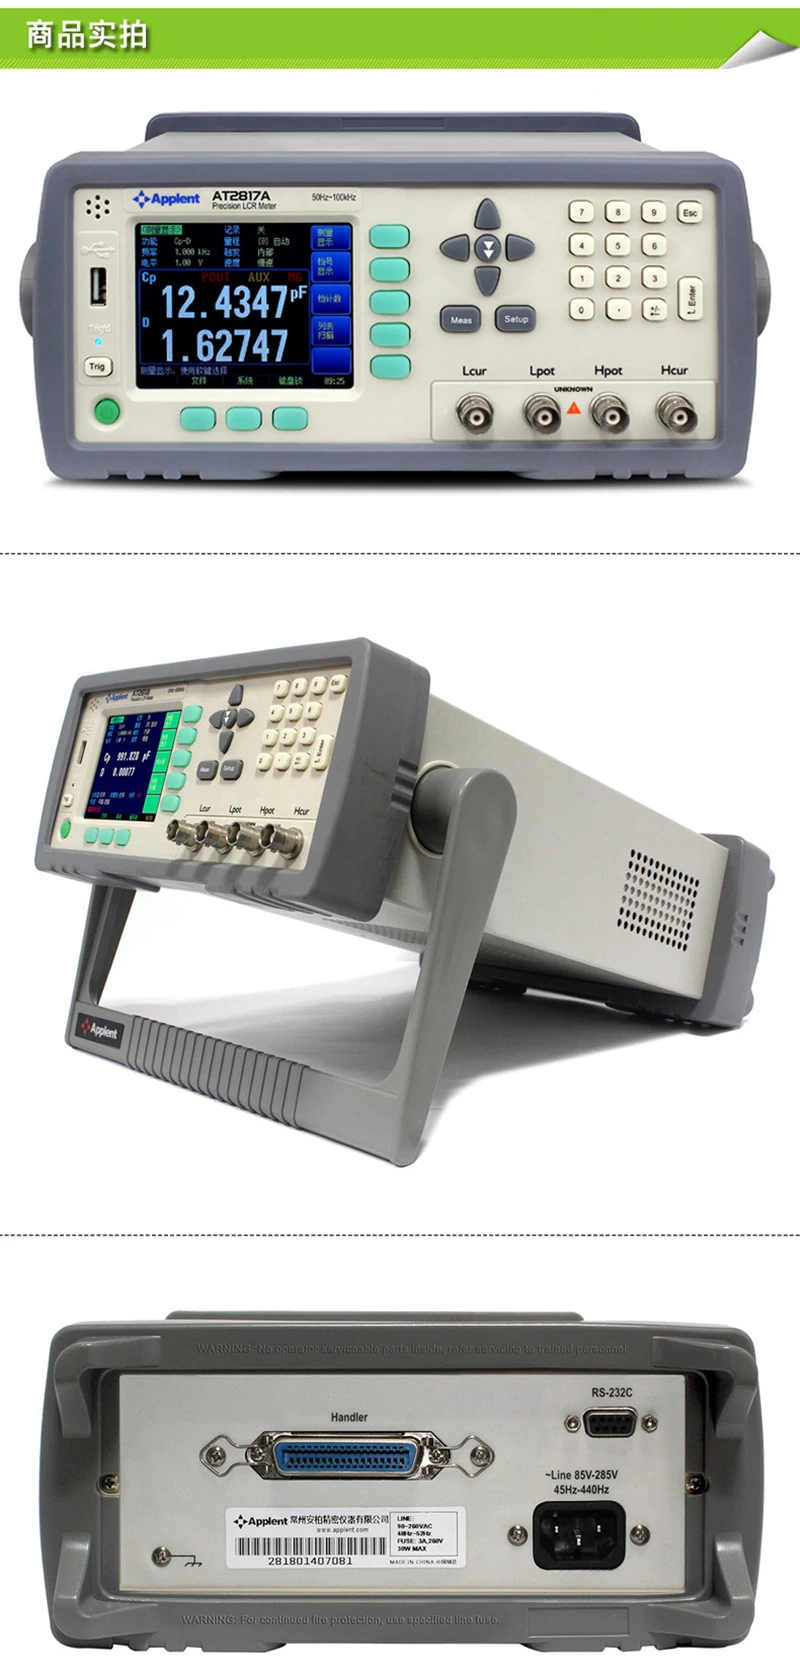 AT2817A applent Цифровой LCR метр тестер уровень сигнала(0.01 В до 2.00 В) высокая точность Цифровой LCR метр частота 50 Гц~ 100 кГц